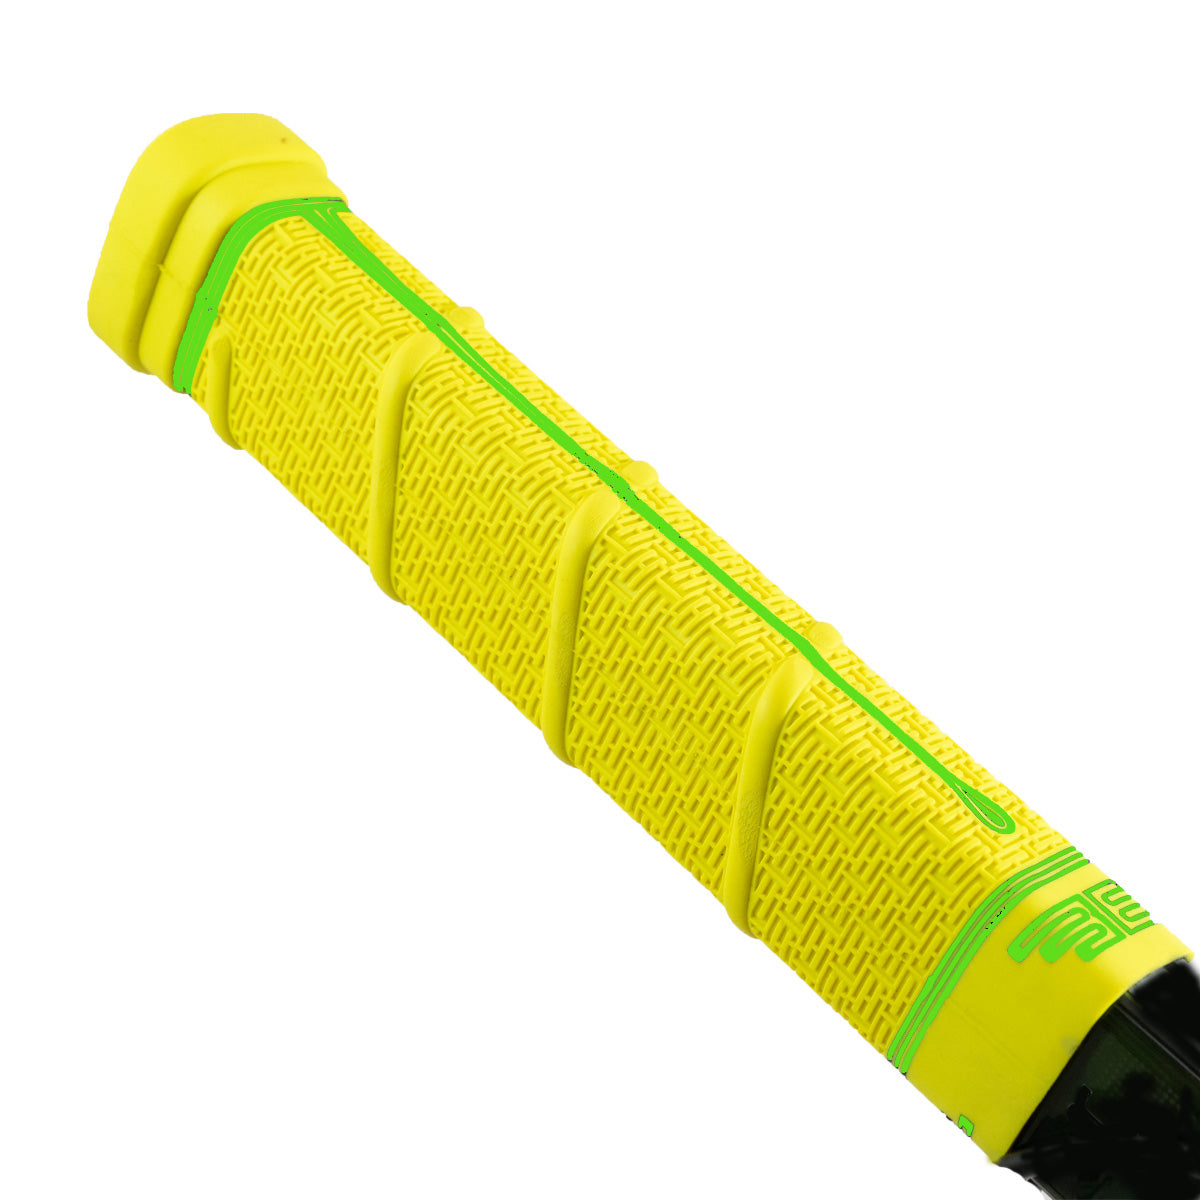 buttendz-future-yellow-green-drip-grip